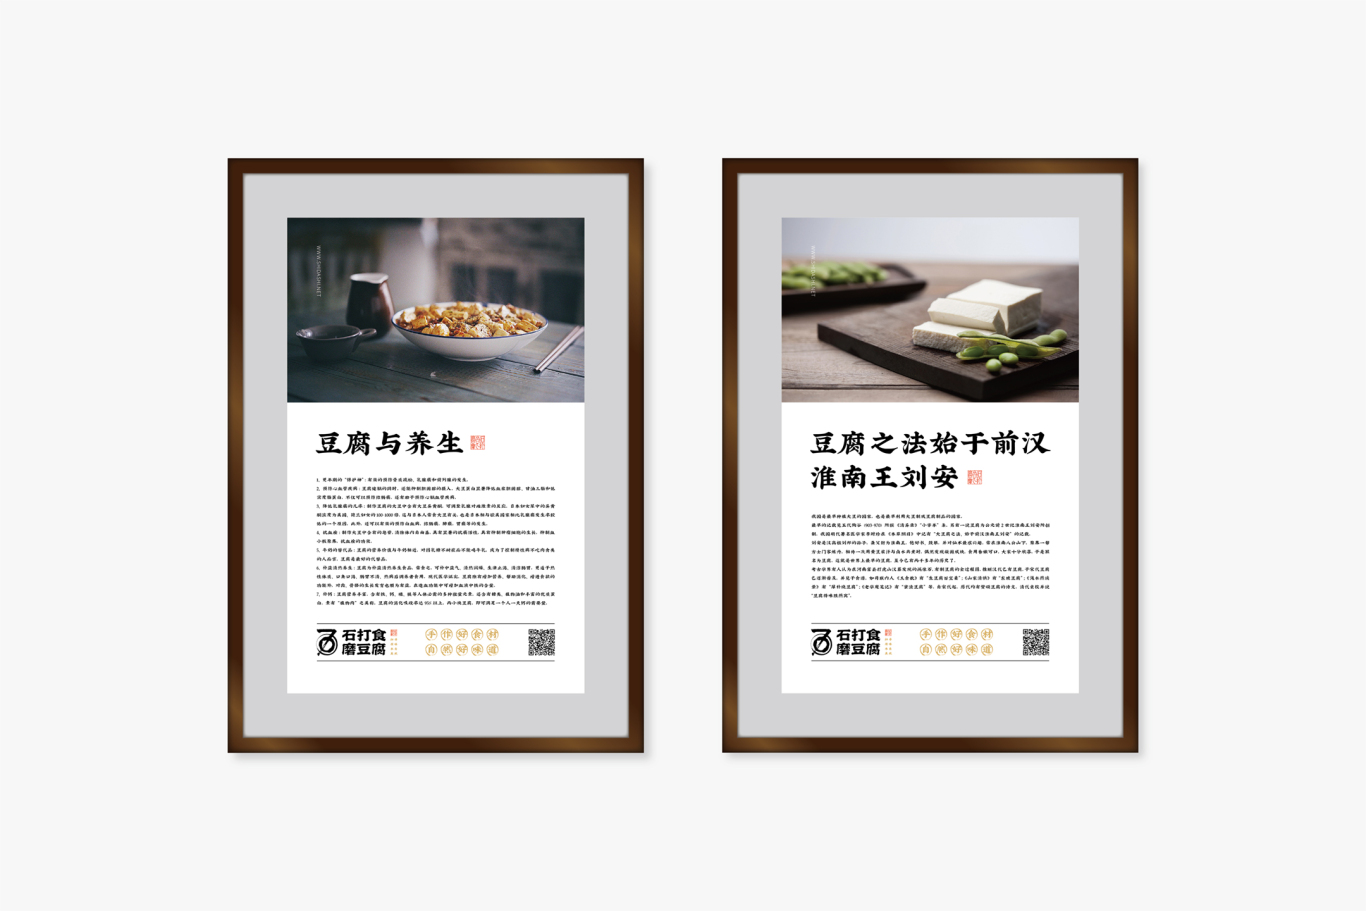 石打食磨豆腐餐飲品牌形象設計圖25